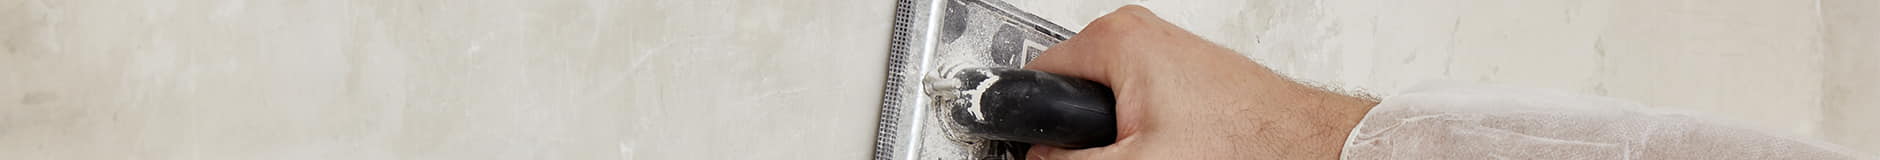 Zastosowanie gotowego do użytku mikrocementu na powierzchni nieprzejezdnej za pomocą szpachli